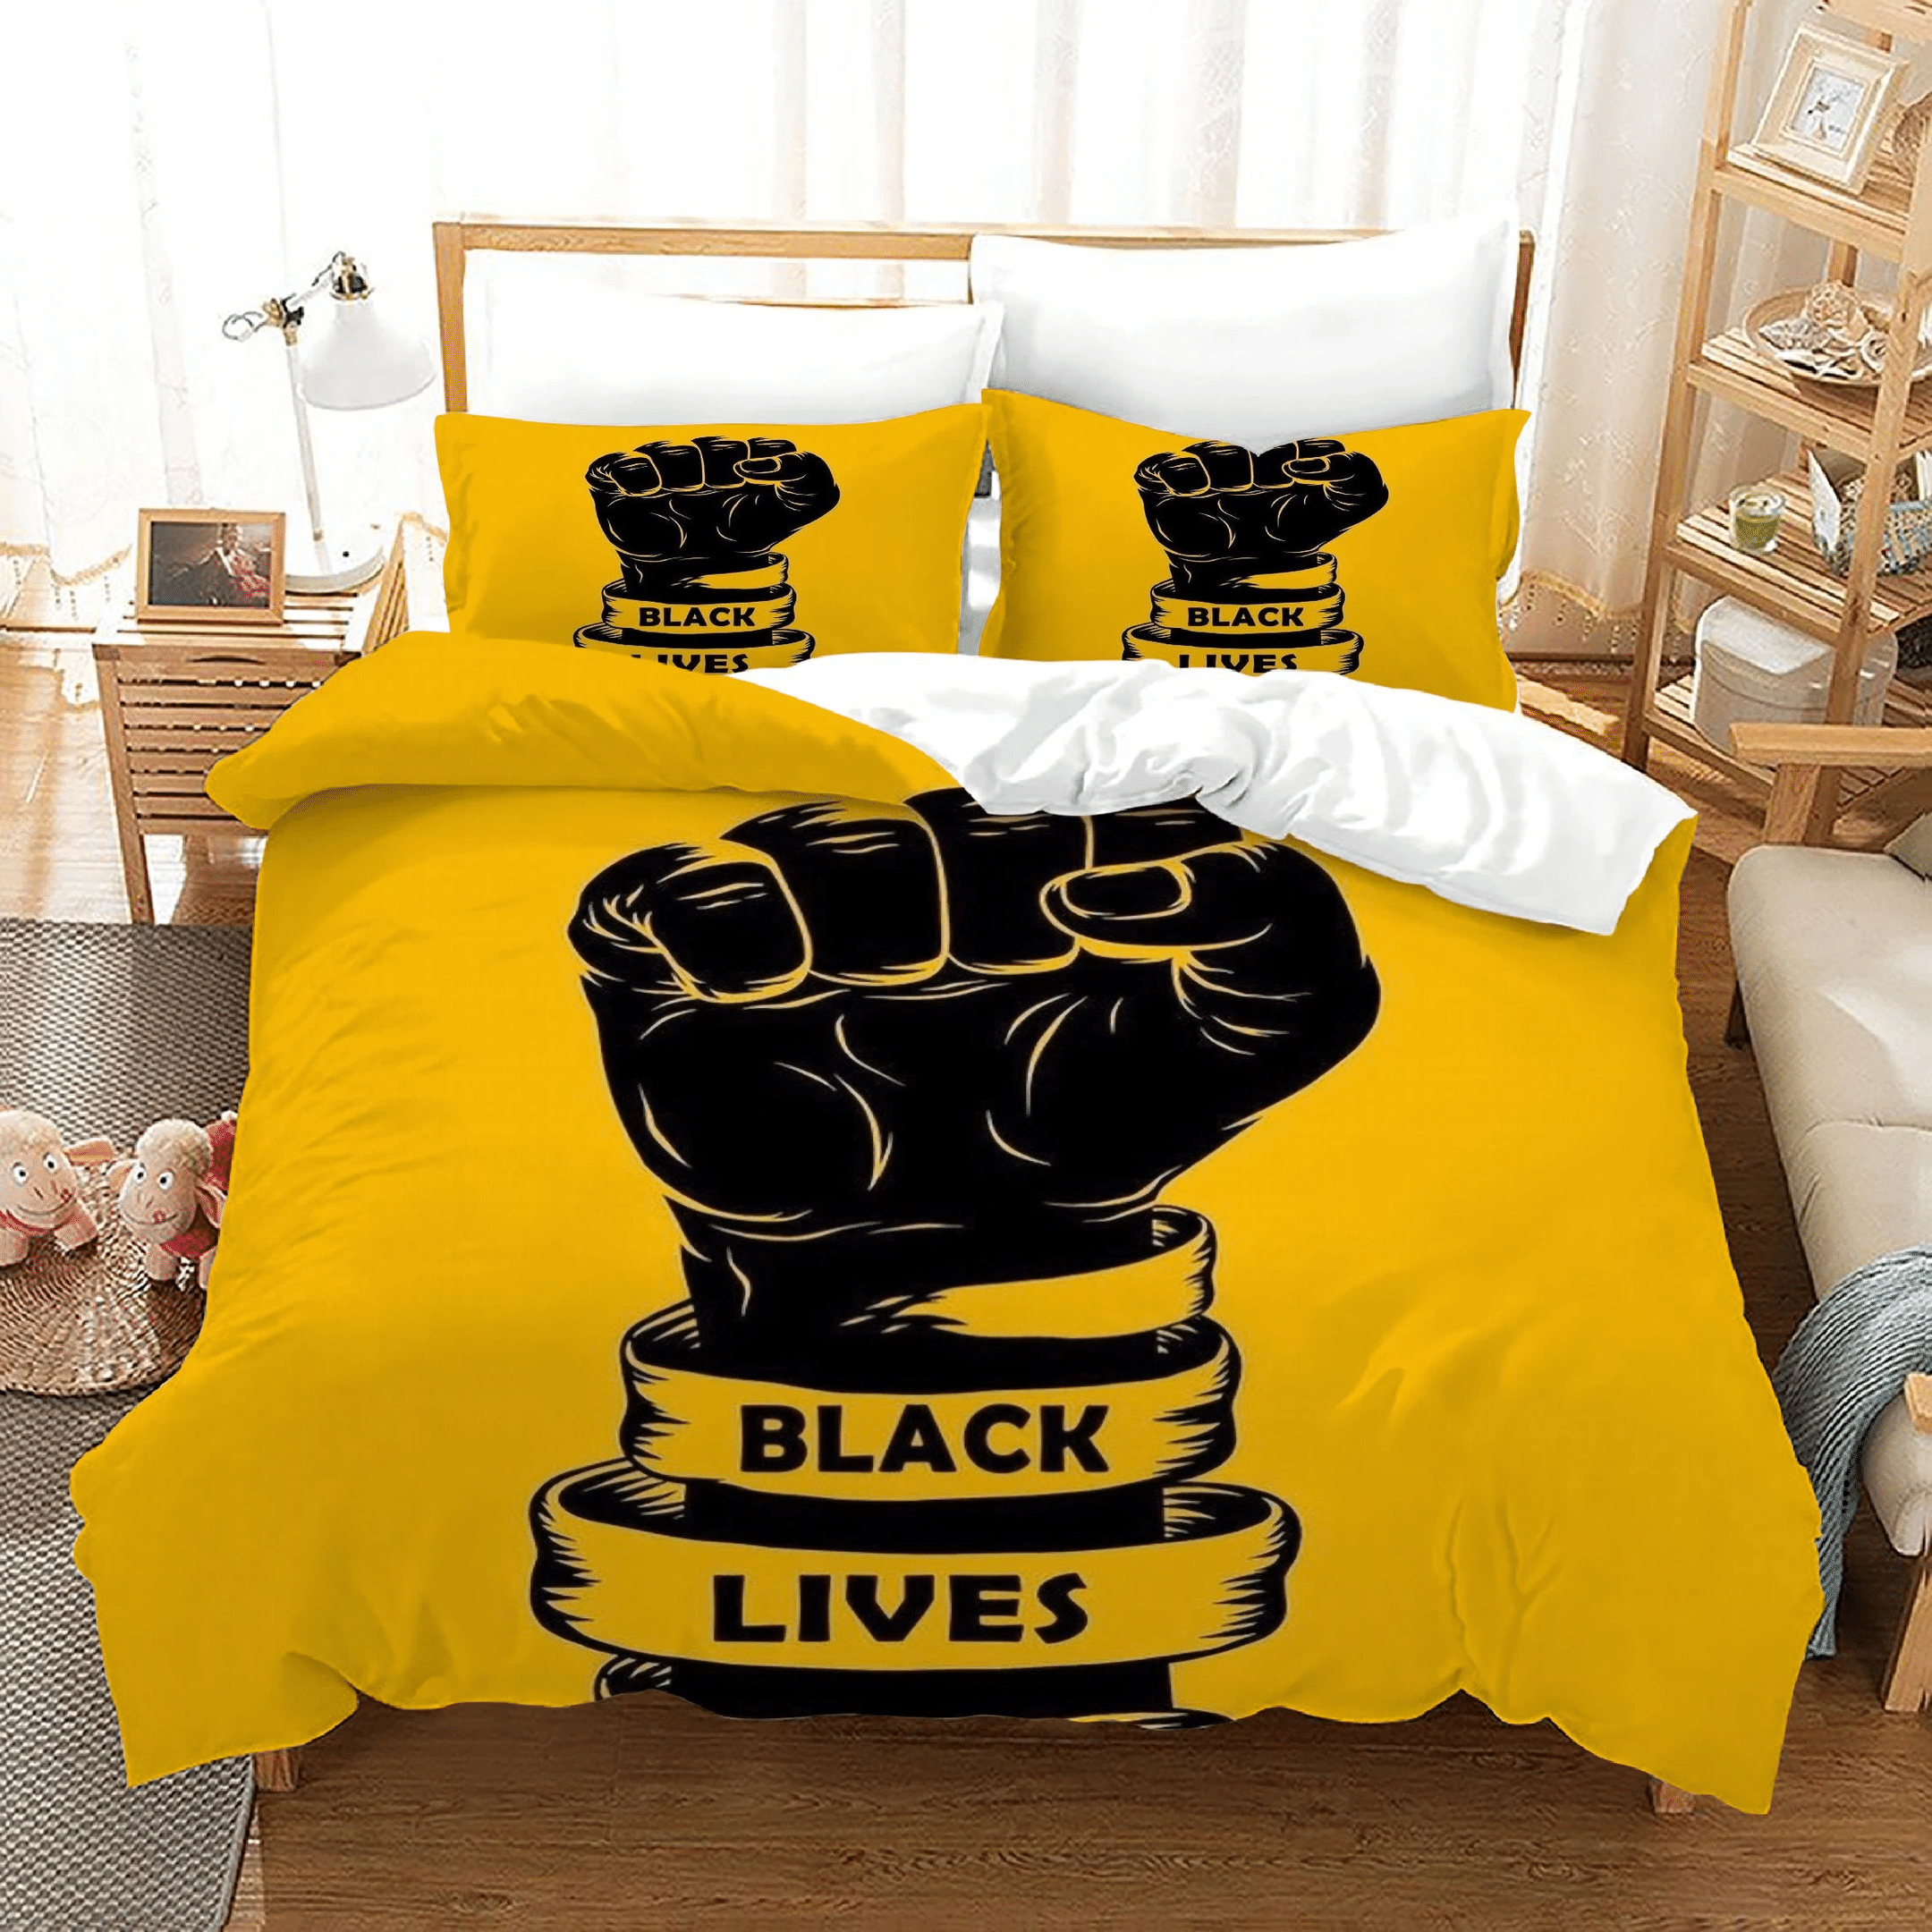 Black Lives Matter 15 Duvet Cover Quilt Cover Pillowcase Bedding